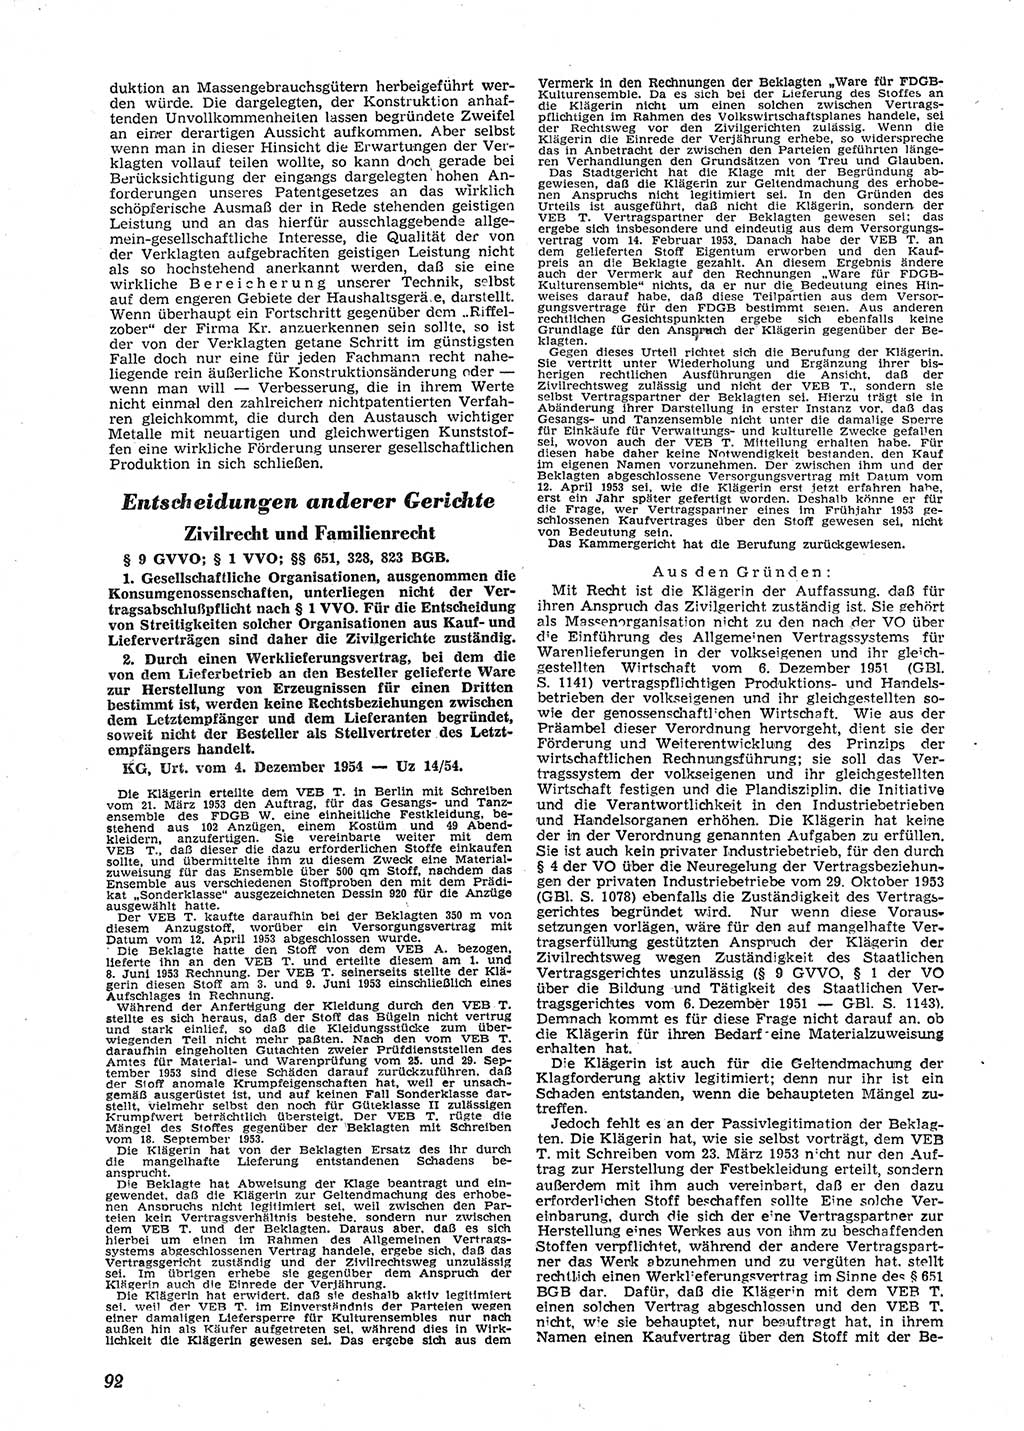 Neue Justiz (NJ), Zeitschrift für Recht und Rechtswissenschaft [Deutsche Demokratische Republik (DDR)], 9. Jahrgang 1955, Seite 92 (NJ DDR 1955, S. 92)